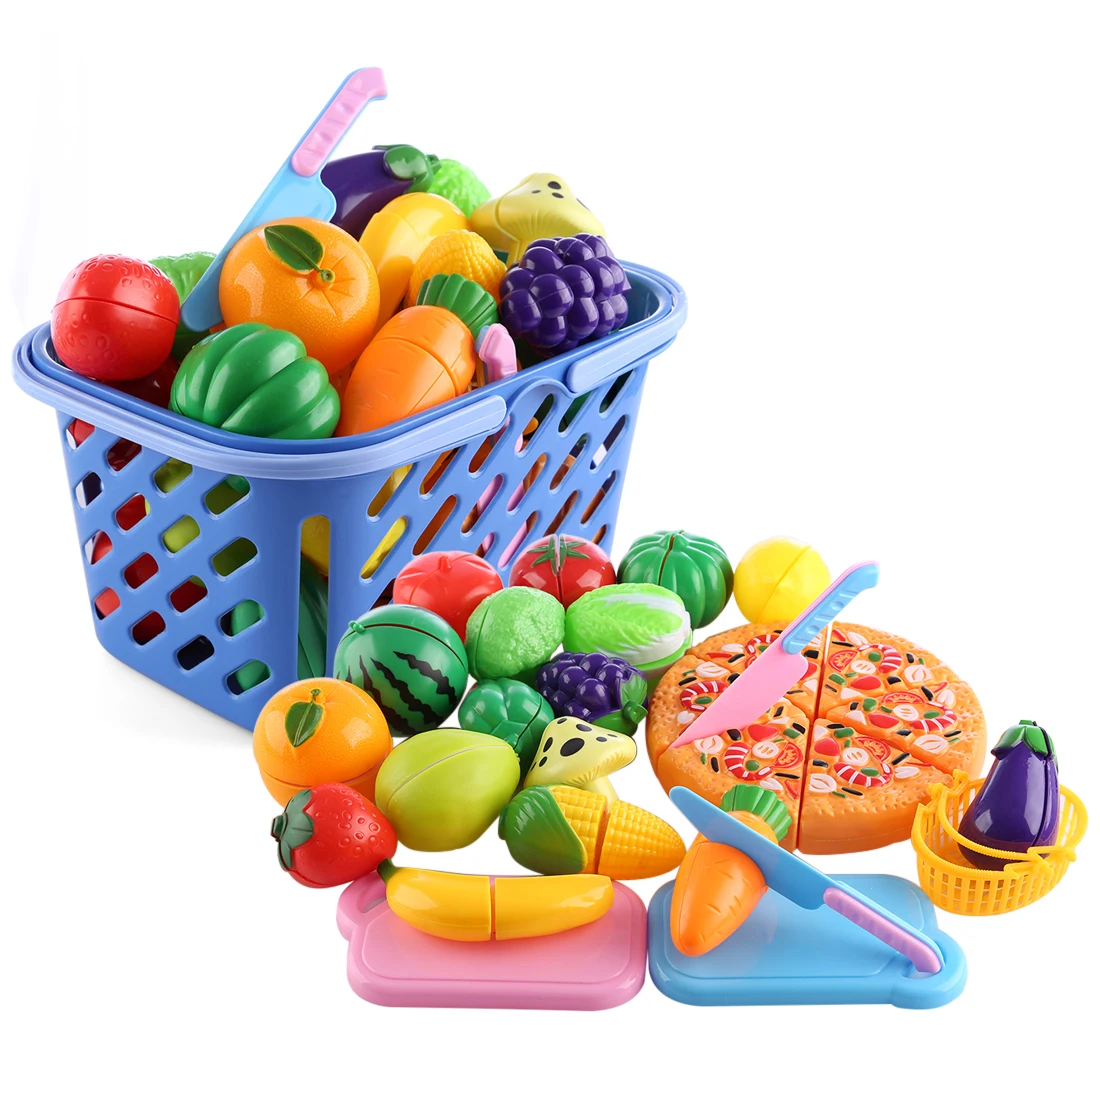 Купить блокс фрутс игрушки с кодом. Игрушки фрукты. Овощи игрушки. Овощи и фрукты игрушки. Пластиковые фрукты.